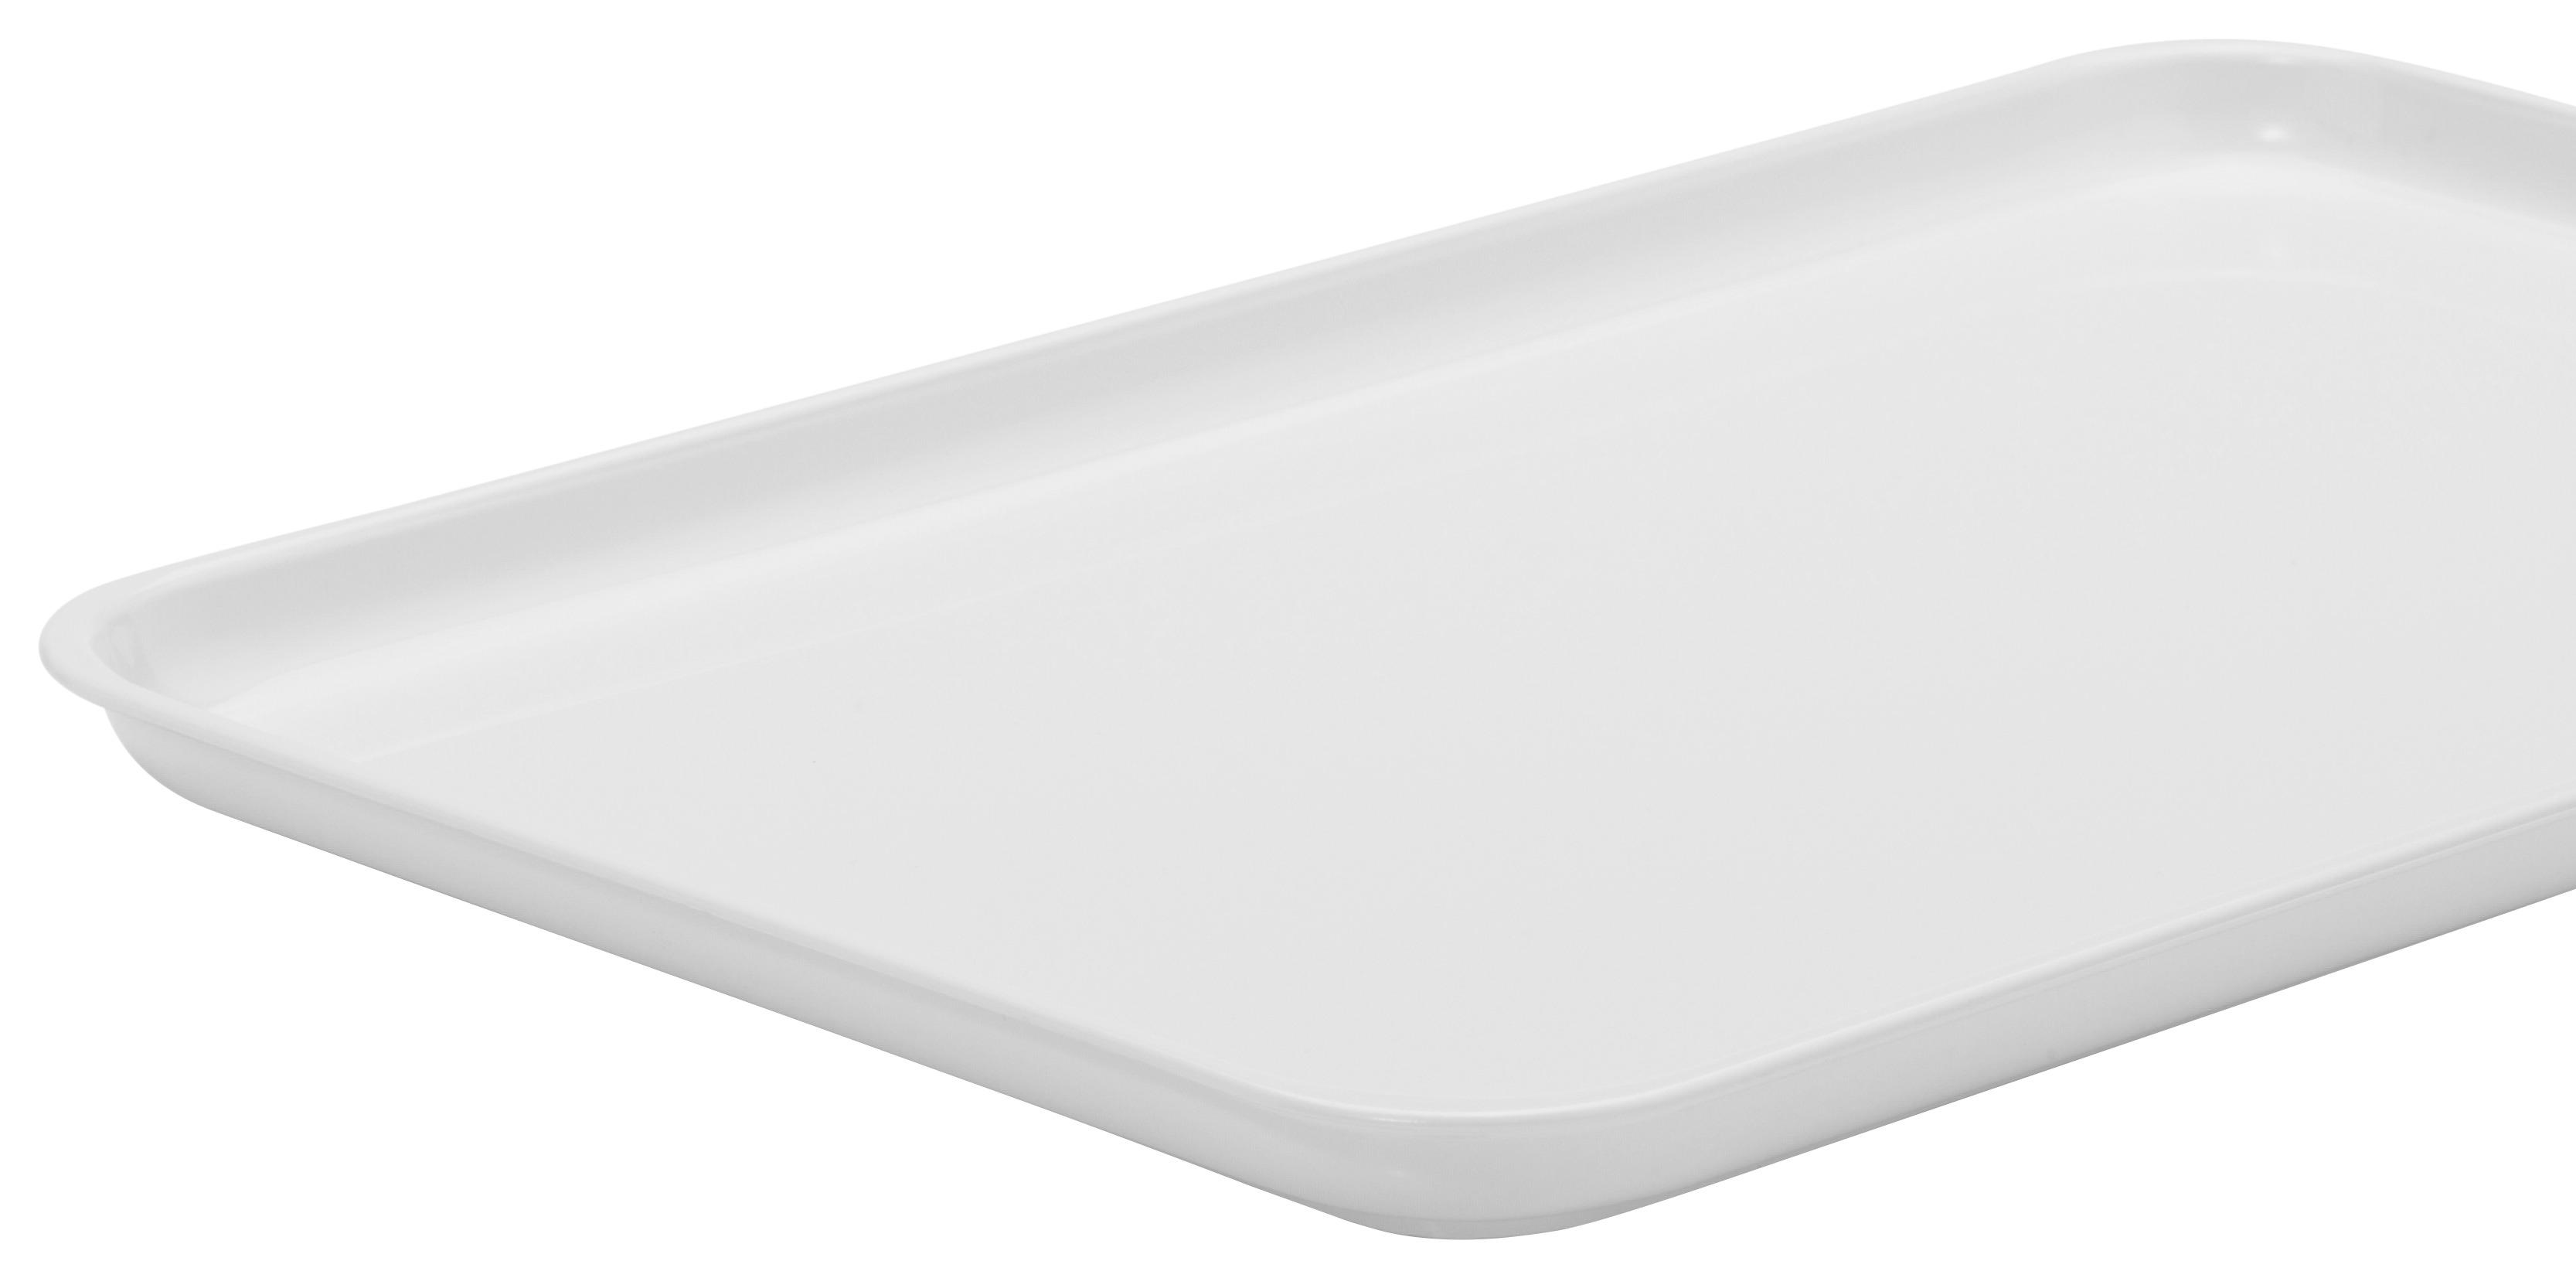 Tablett aus Kunststoff Britta 32x23 cm, Weiß - Weiß, KONVENTIONELL, Kunststoff (32/23/2cm)